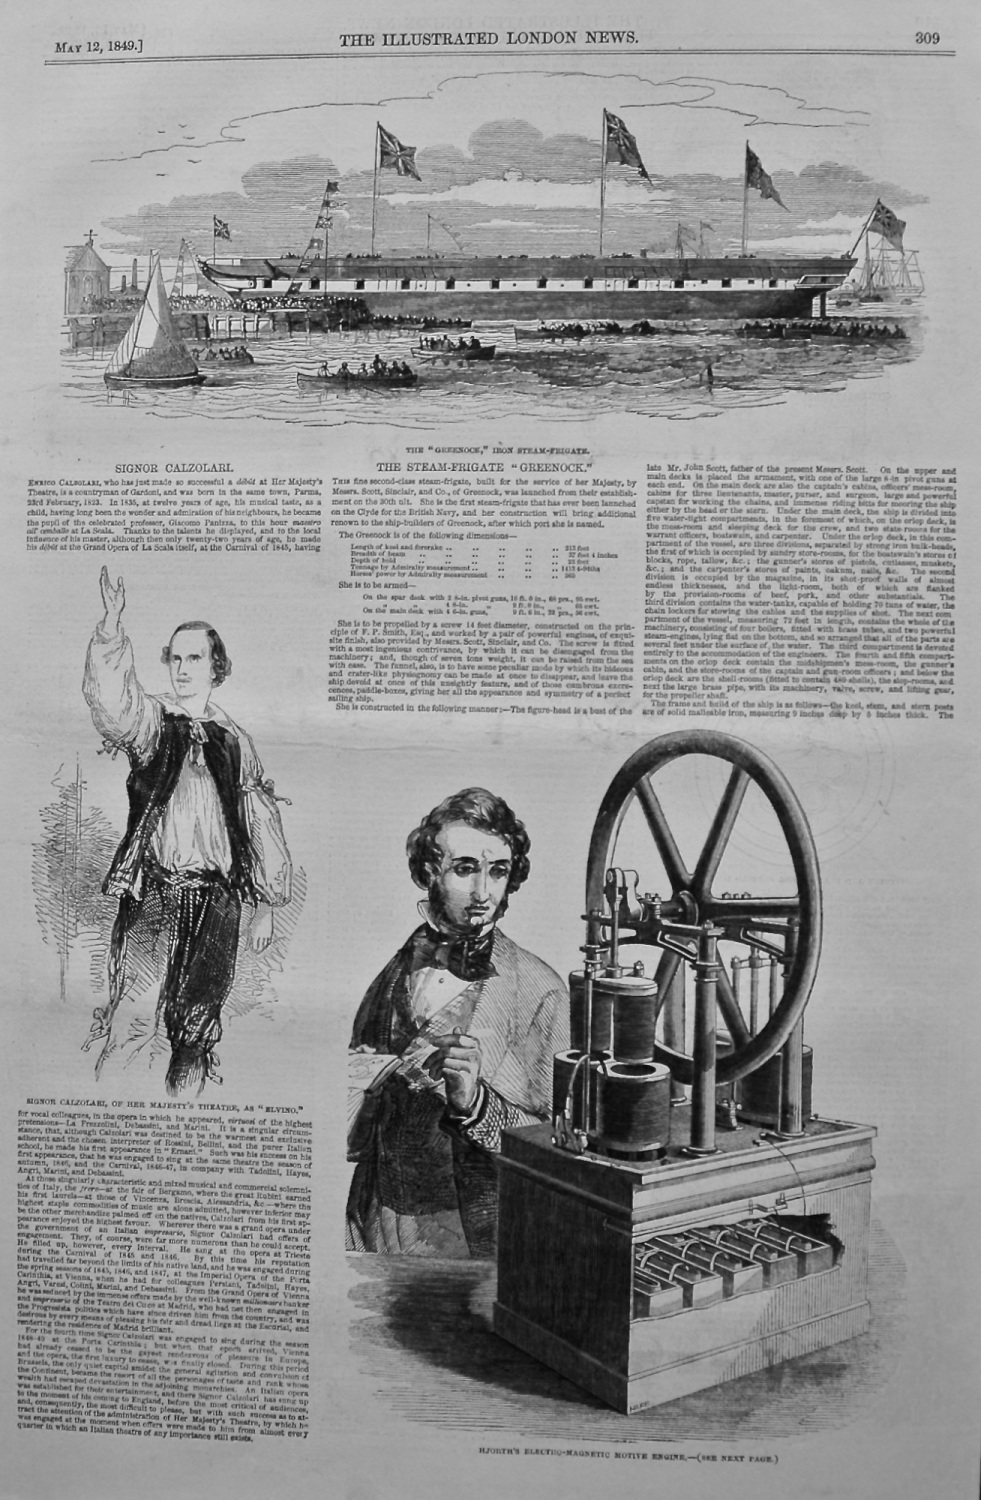 Hjorth's Electro Magnetic Motive Engine. 1849.